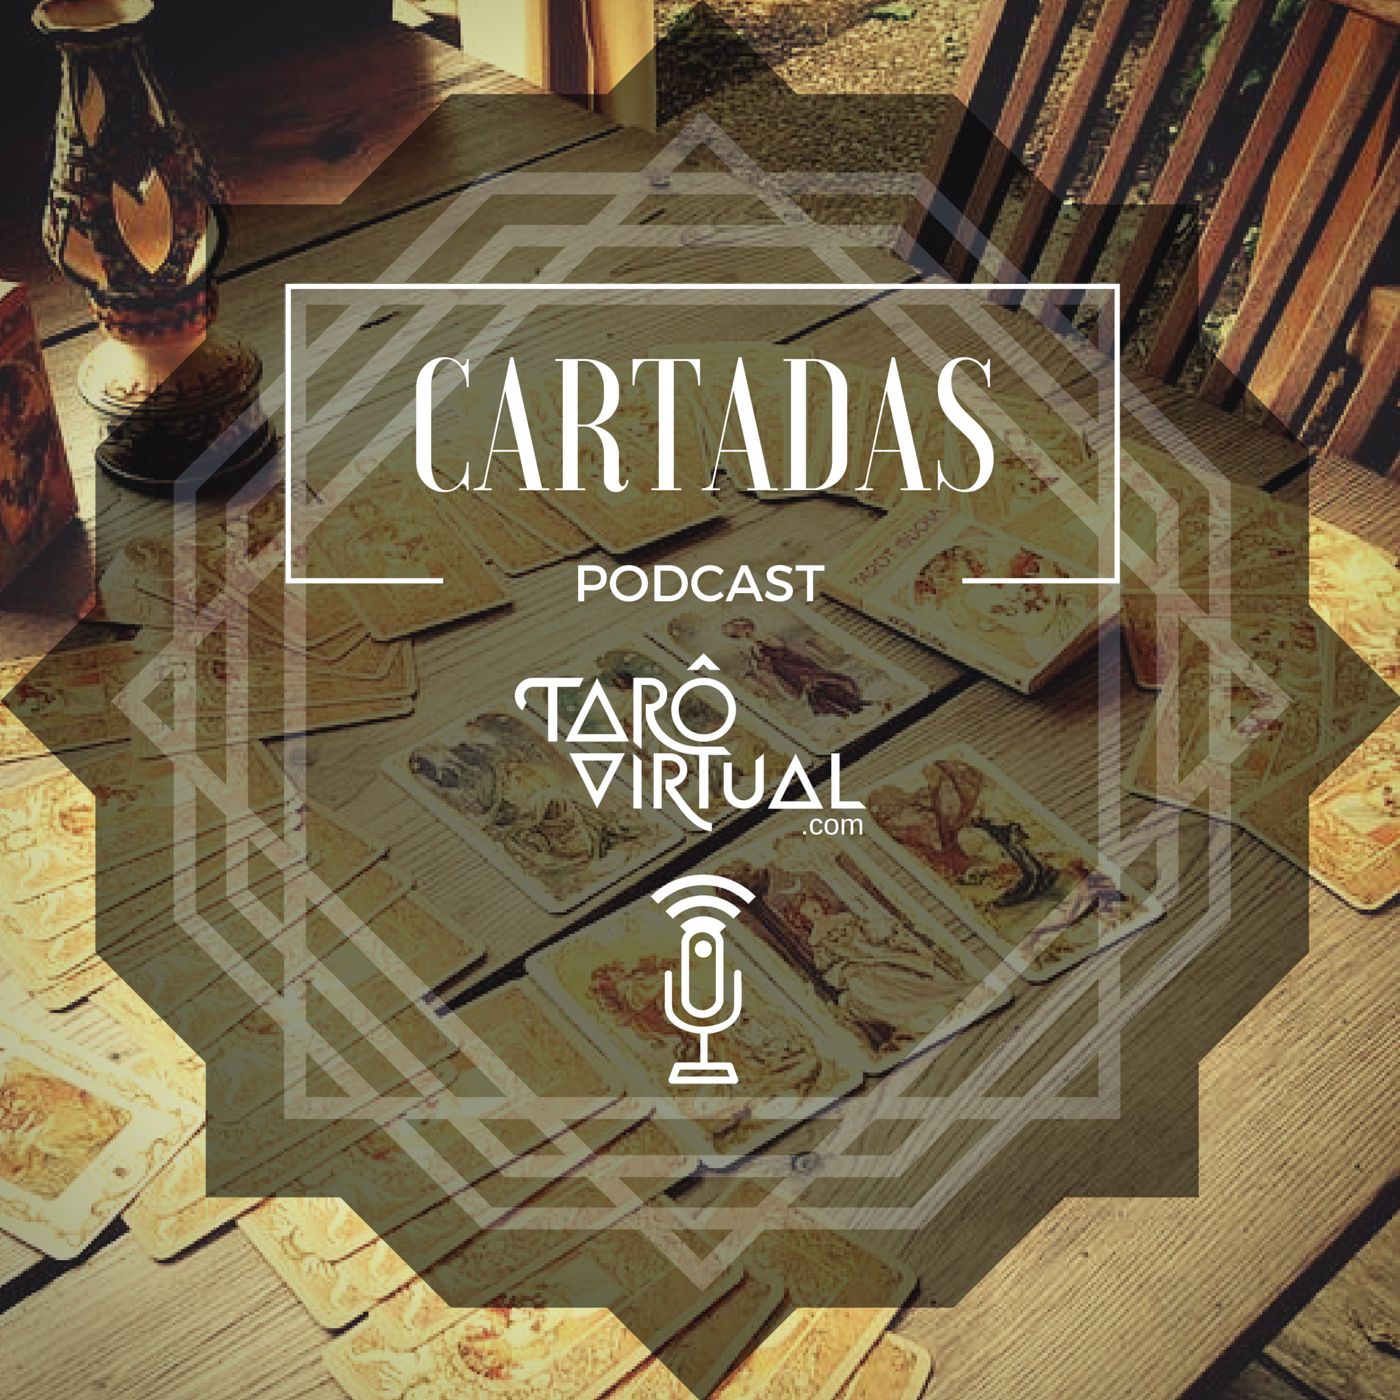 Cartadas Podcast